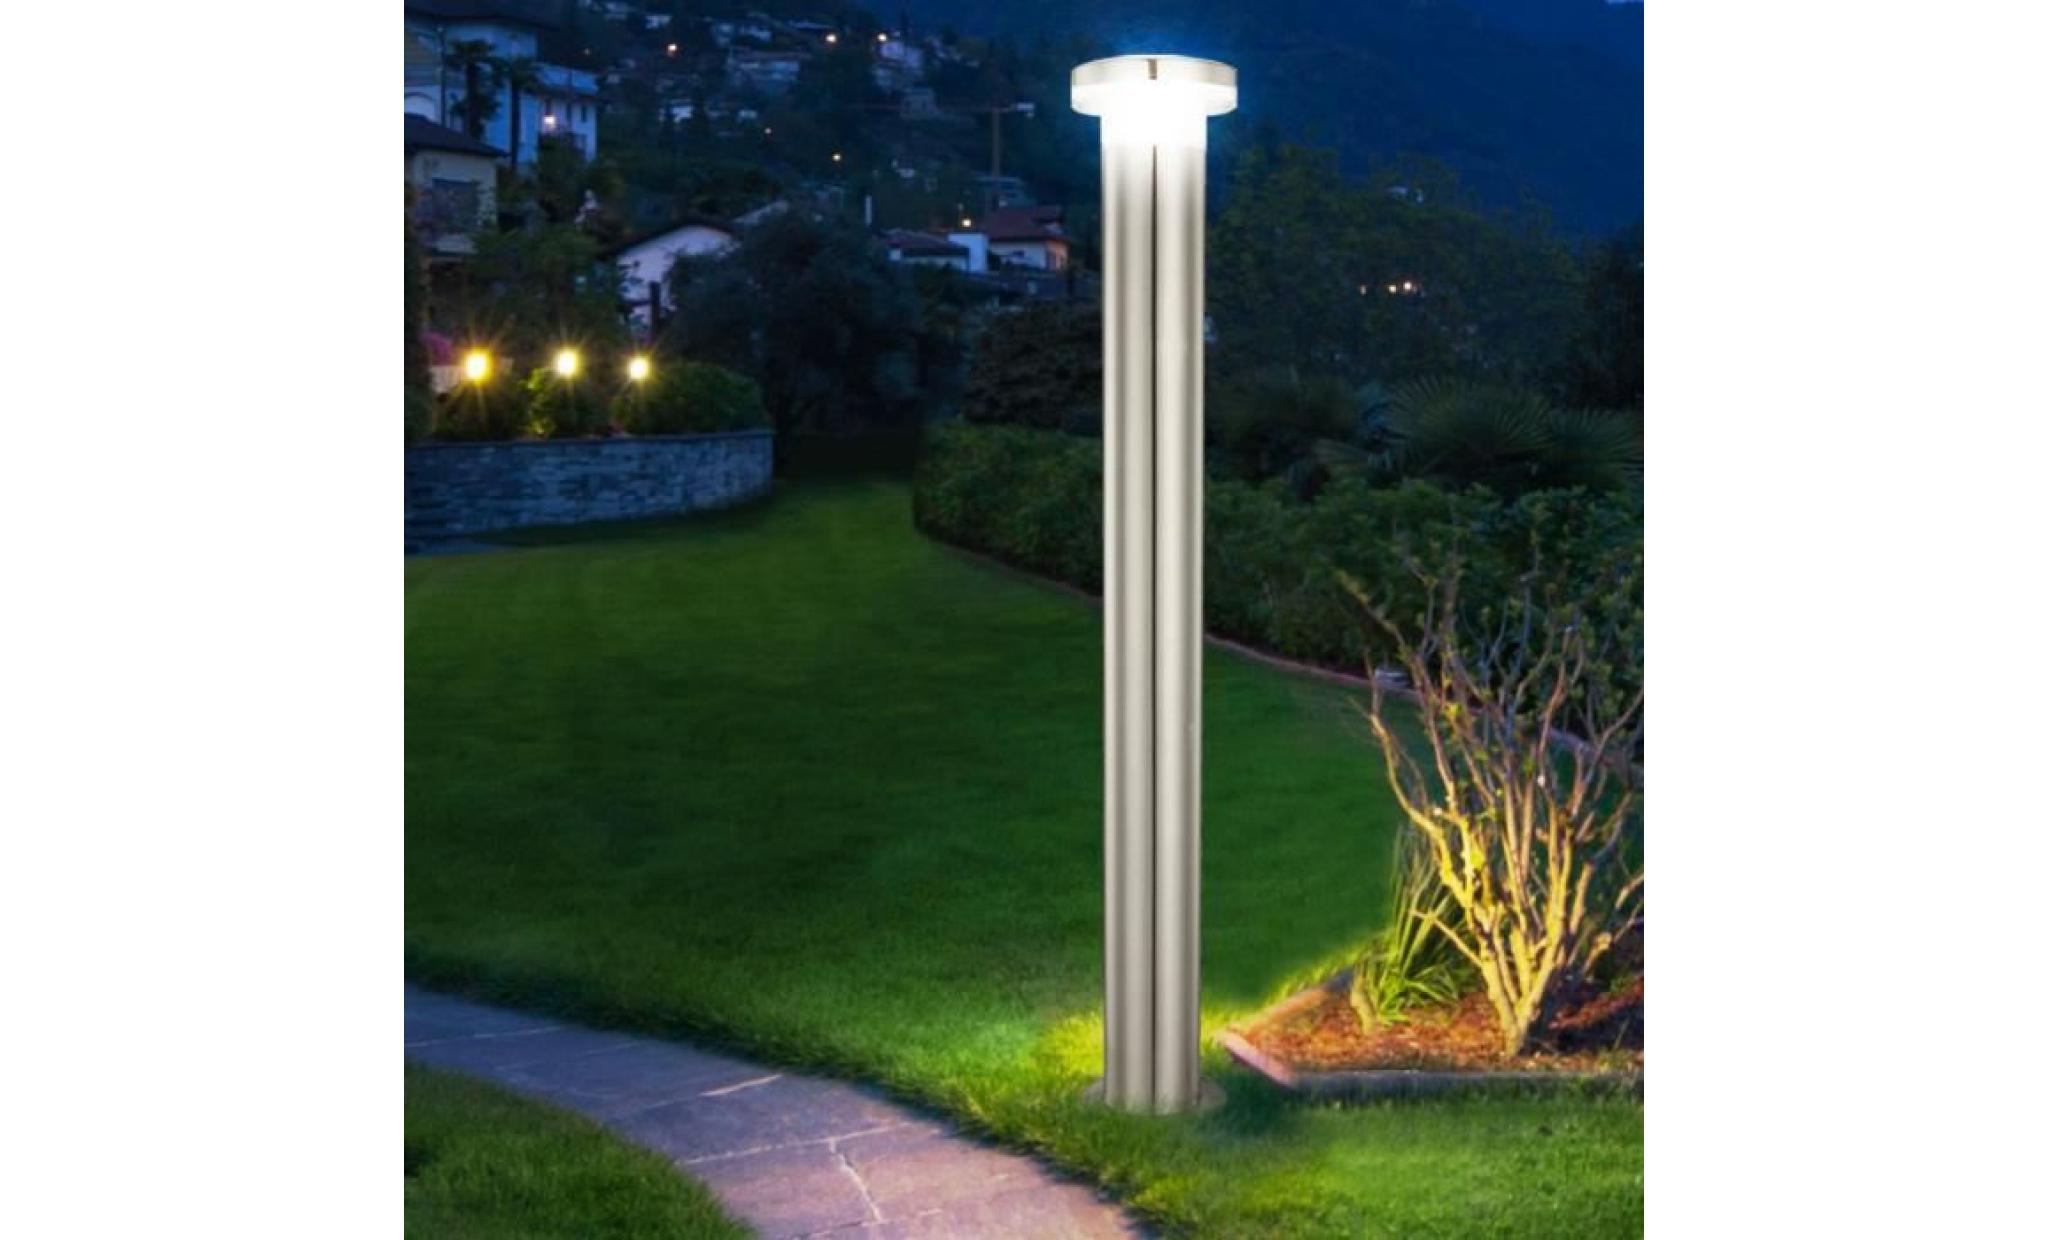 2 x lampadaire extérieur del 6 watts luminaire sur pied lampe led jardin terrasse pas cher